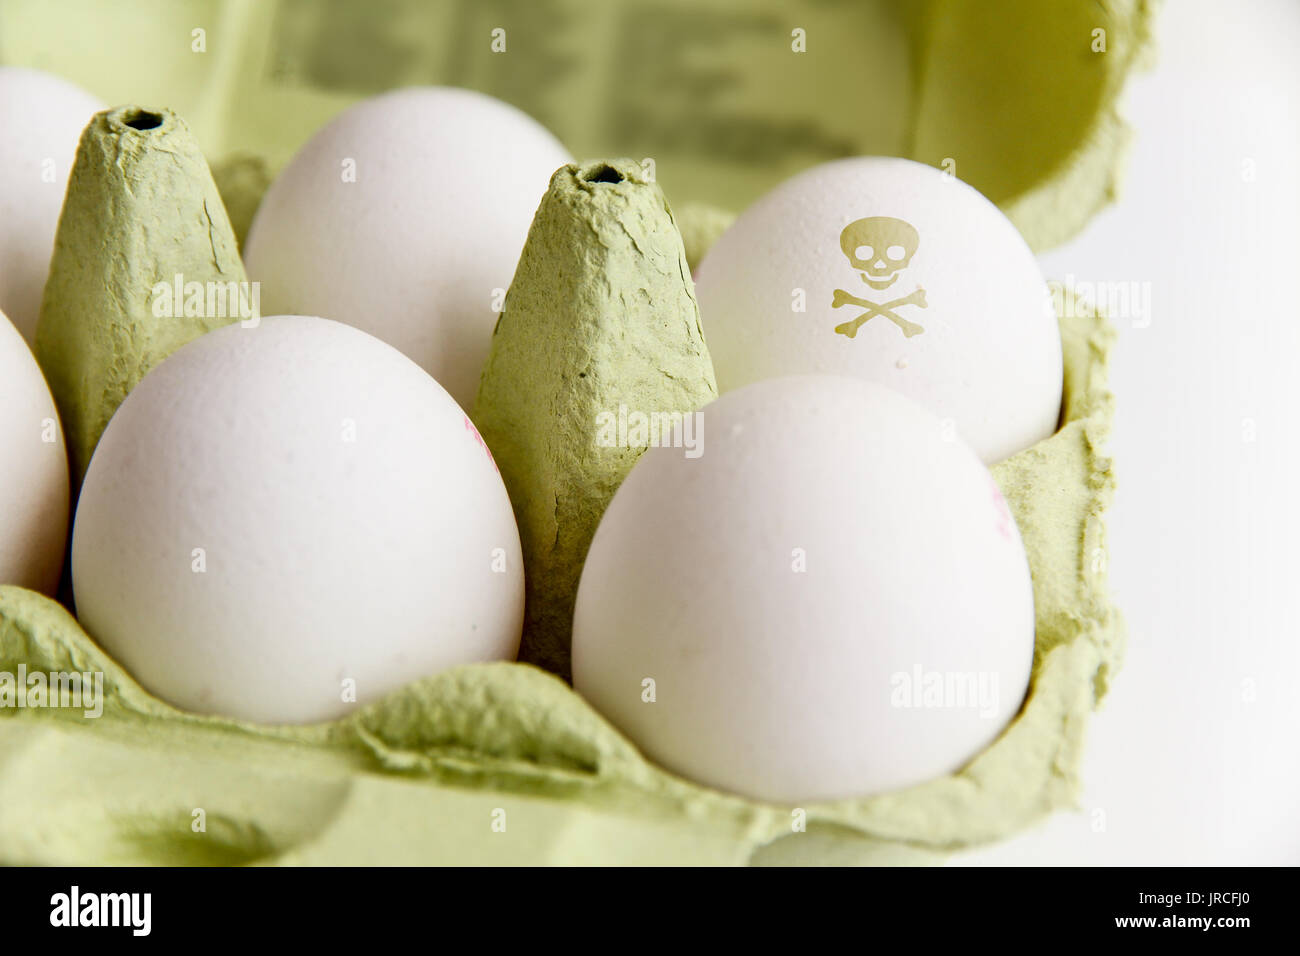 Eier in ein Paket mit ein Ei mit einem giftigen Gefahr symbol Schädel und Knochen bemalt. Bild Konzept für Lebensmittel Verunreinigungen, verdorbene Eier Skandal. Stockfoto